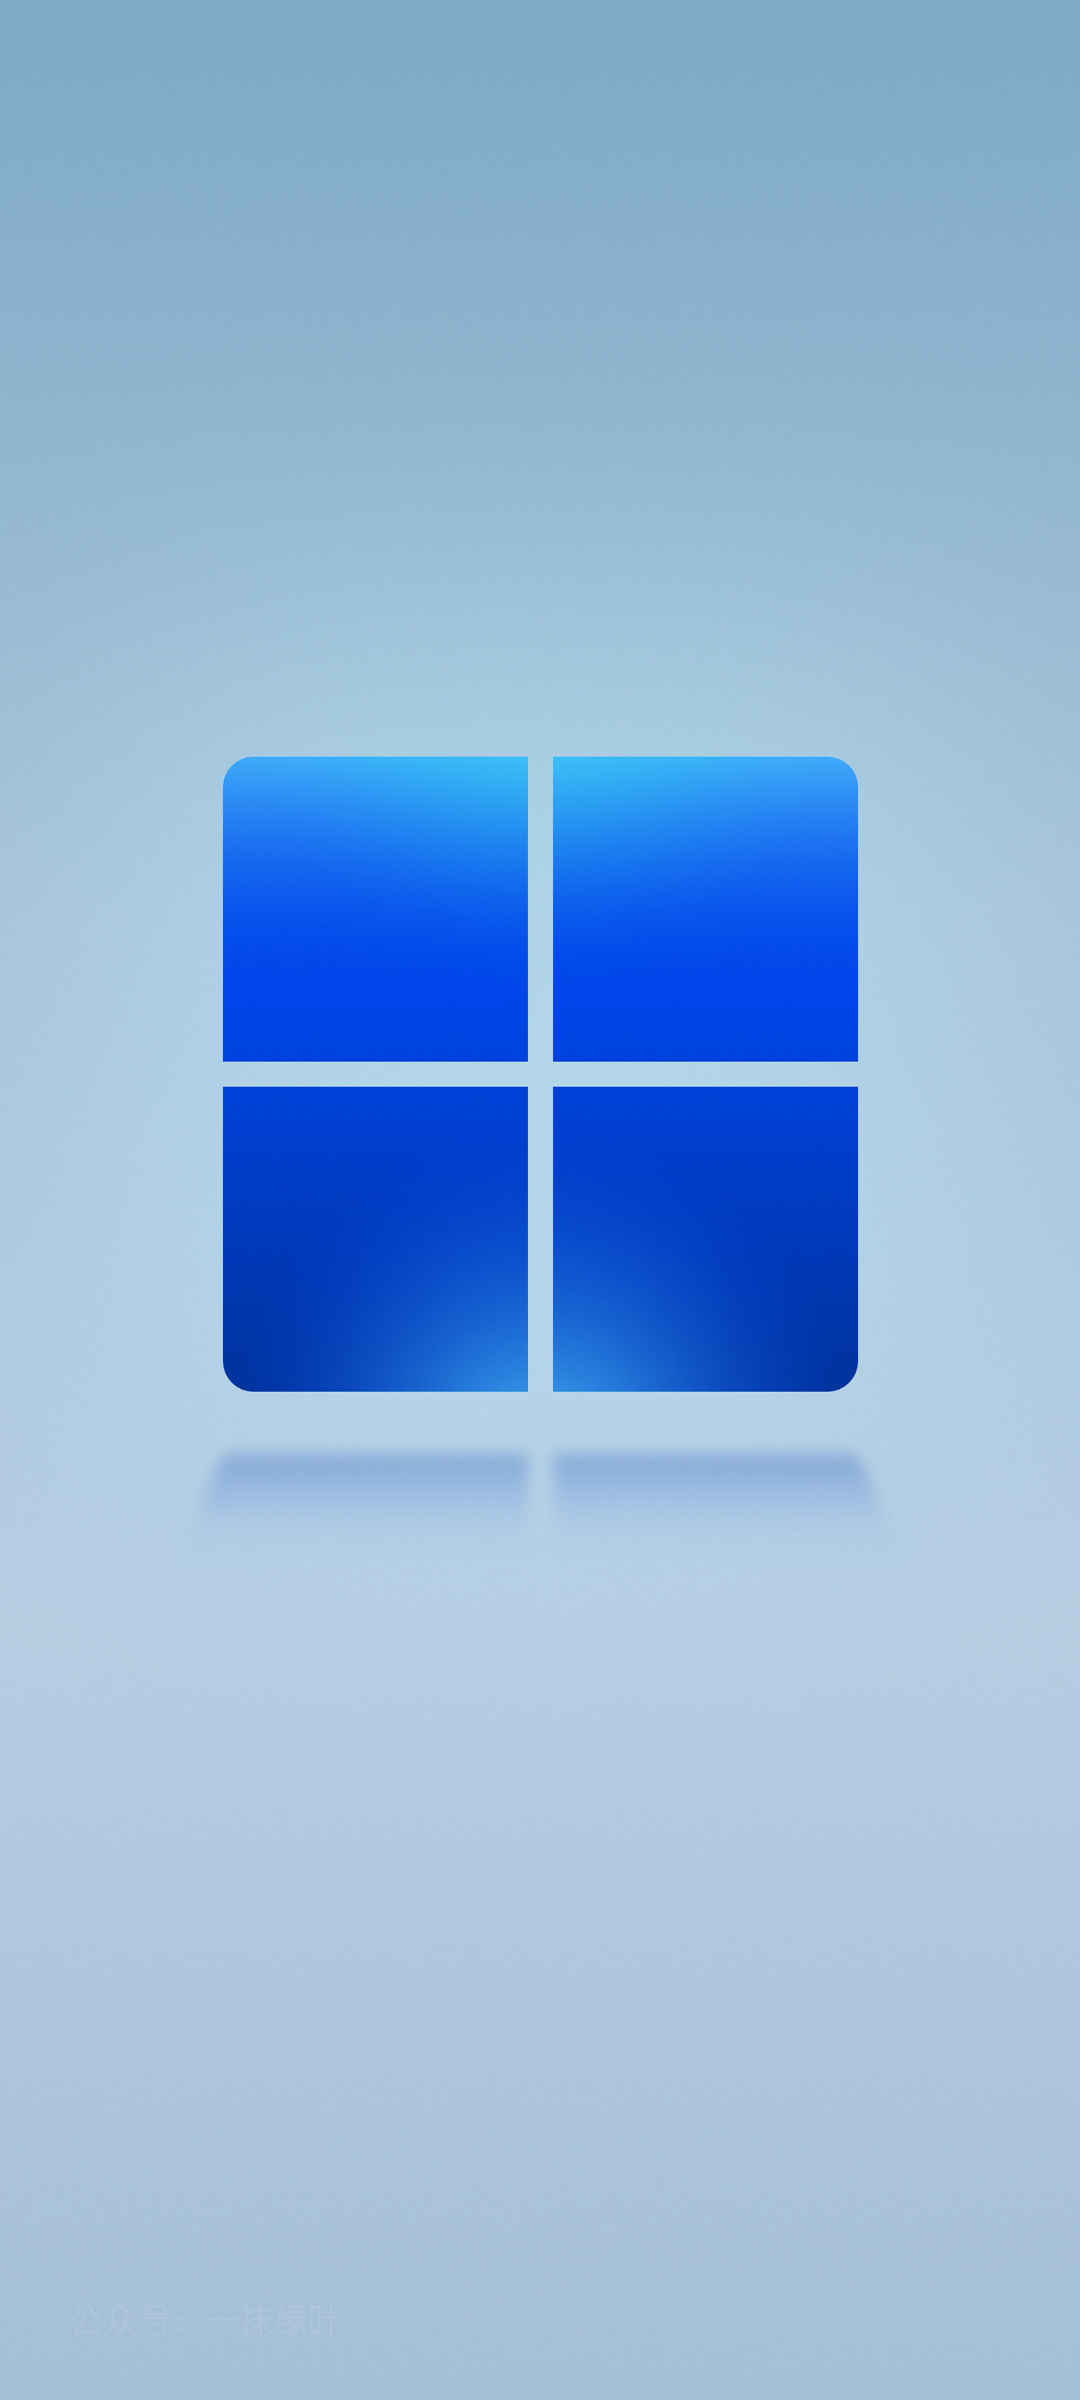 微软win11系统默认 浅蓝色 高清全面屏手机壁纸